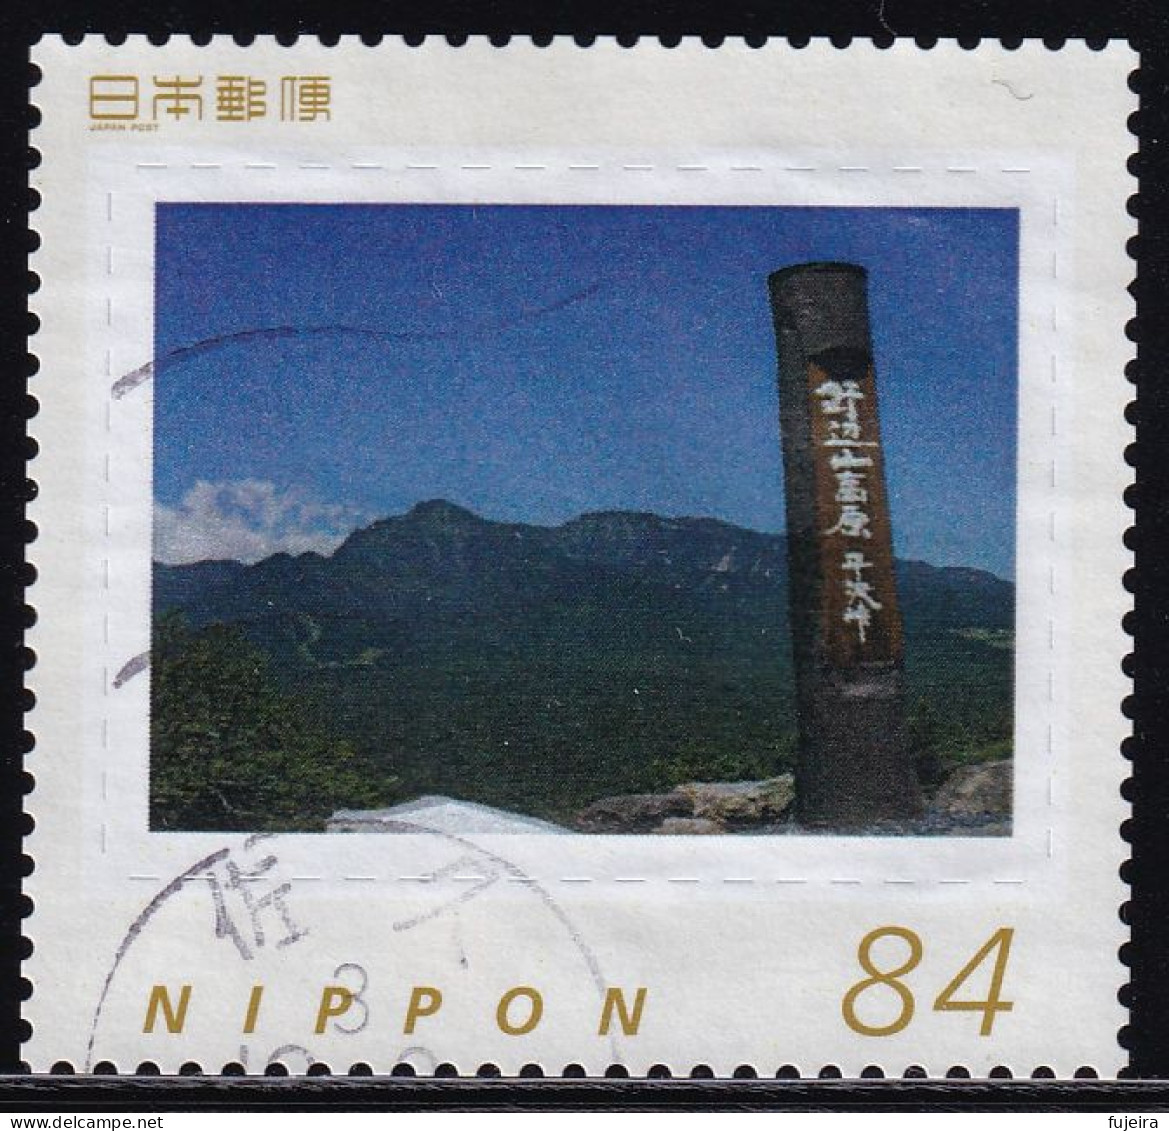 Japan Personalized Stamp, Nobeyama Highland (jpw0048) Used - Usati